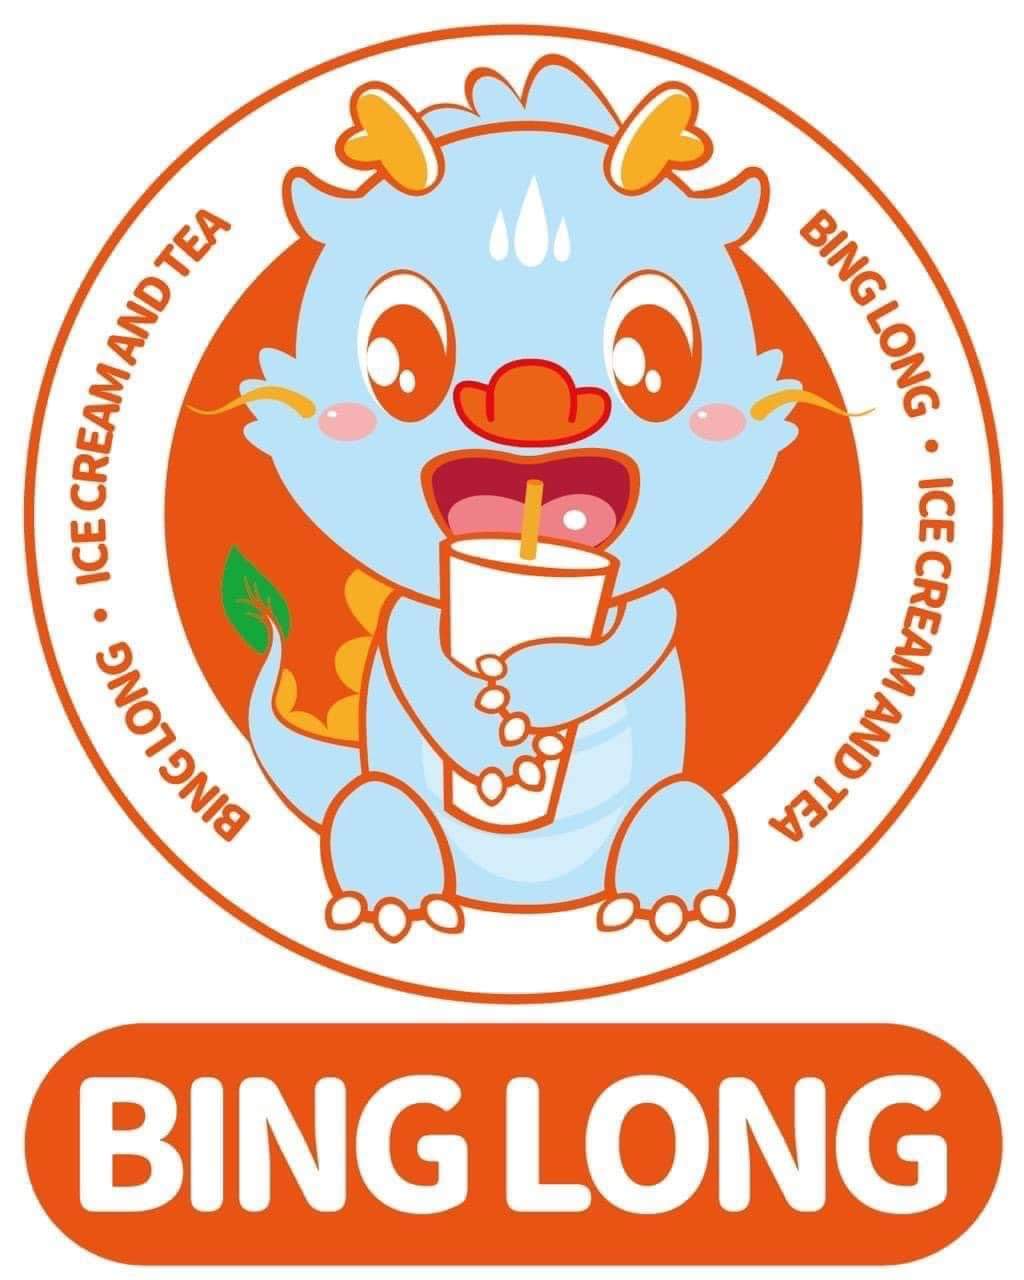 Trà sữa BingLong khuấy đảo thị trường trà sữa Việt - Ảnh 4.